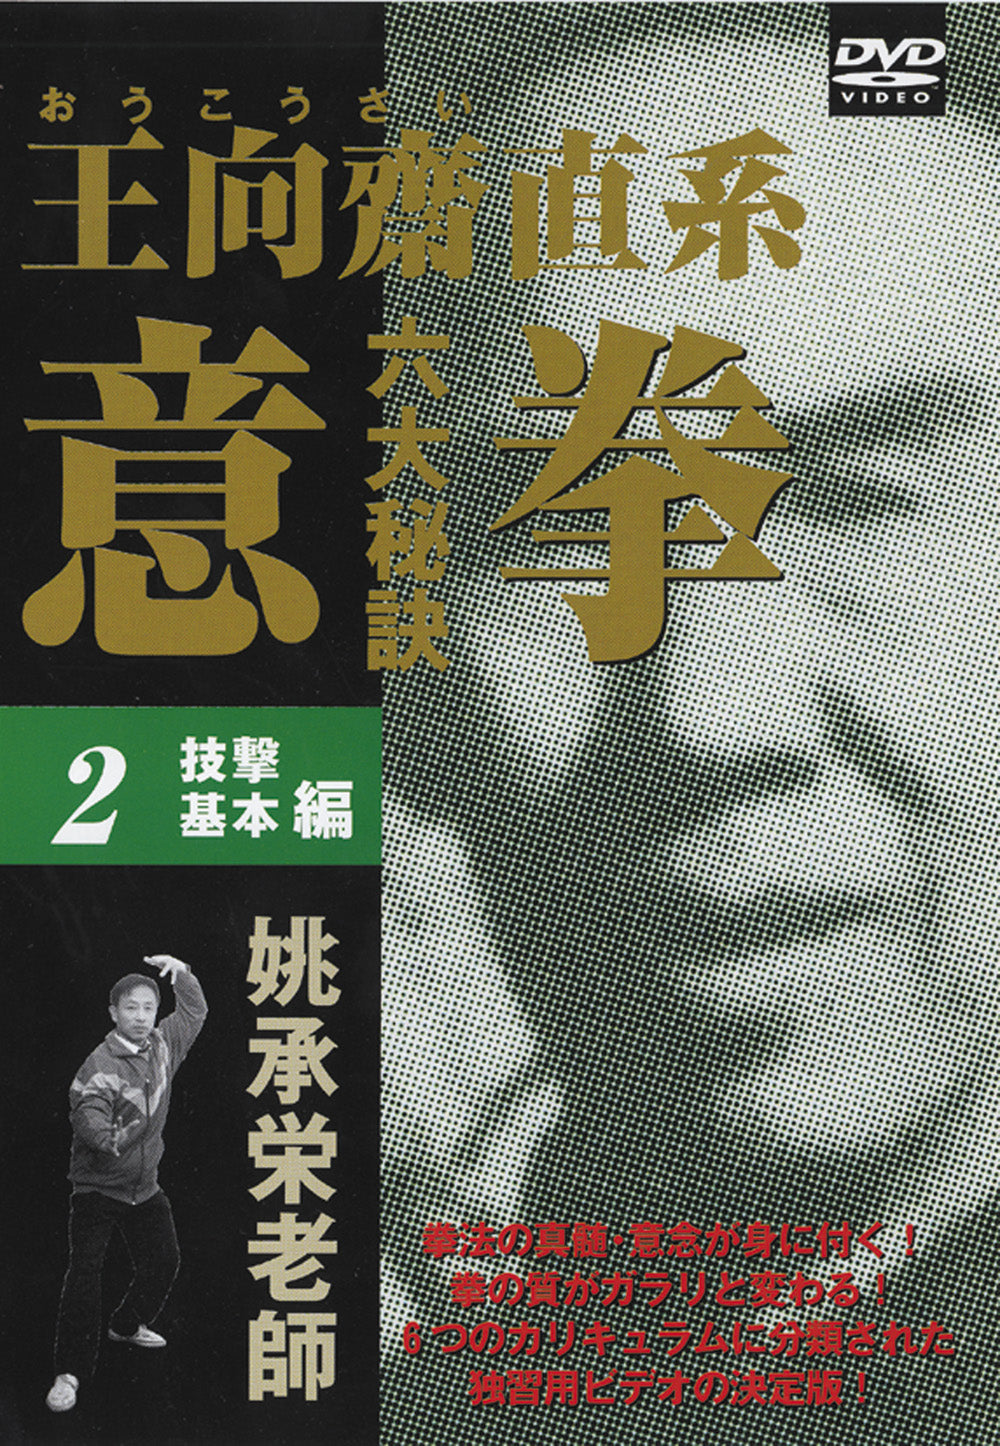 Six Great Secrets of Yiquan DVD 2 by Tao Shouei